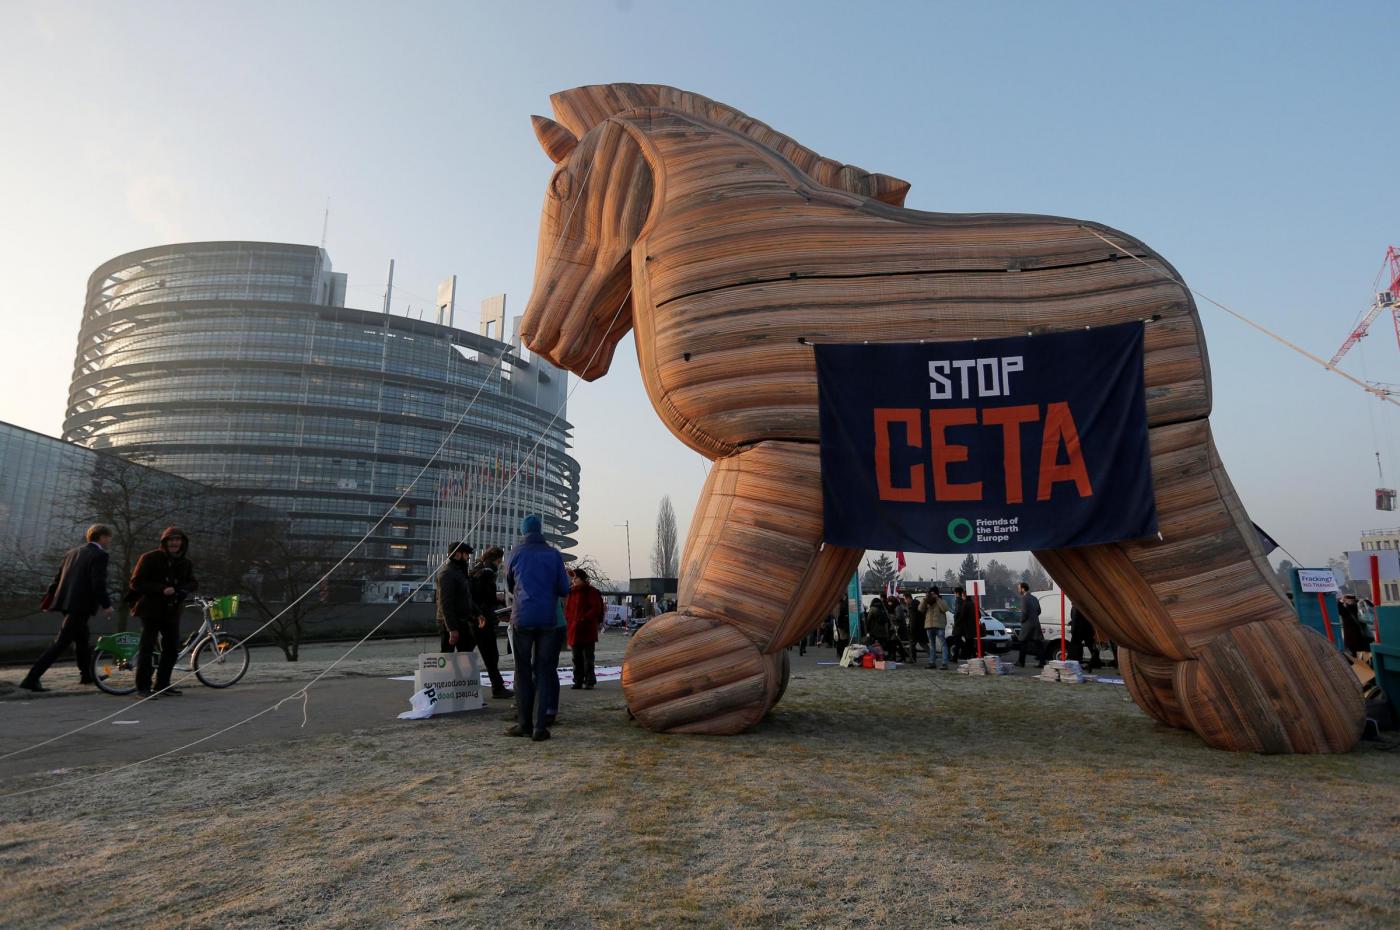 Francia, protesta contro CETA a Strasburgo